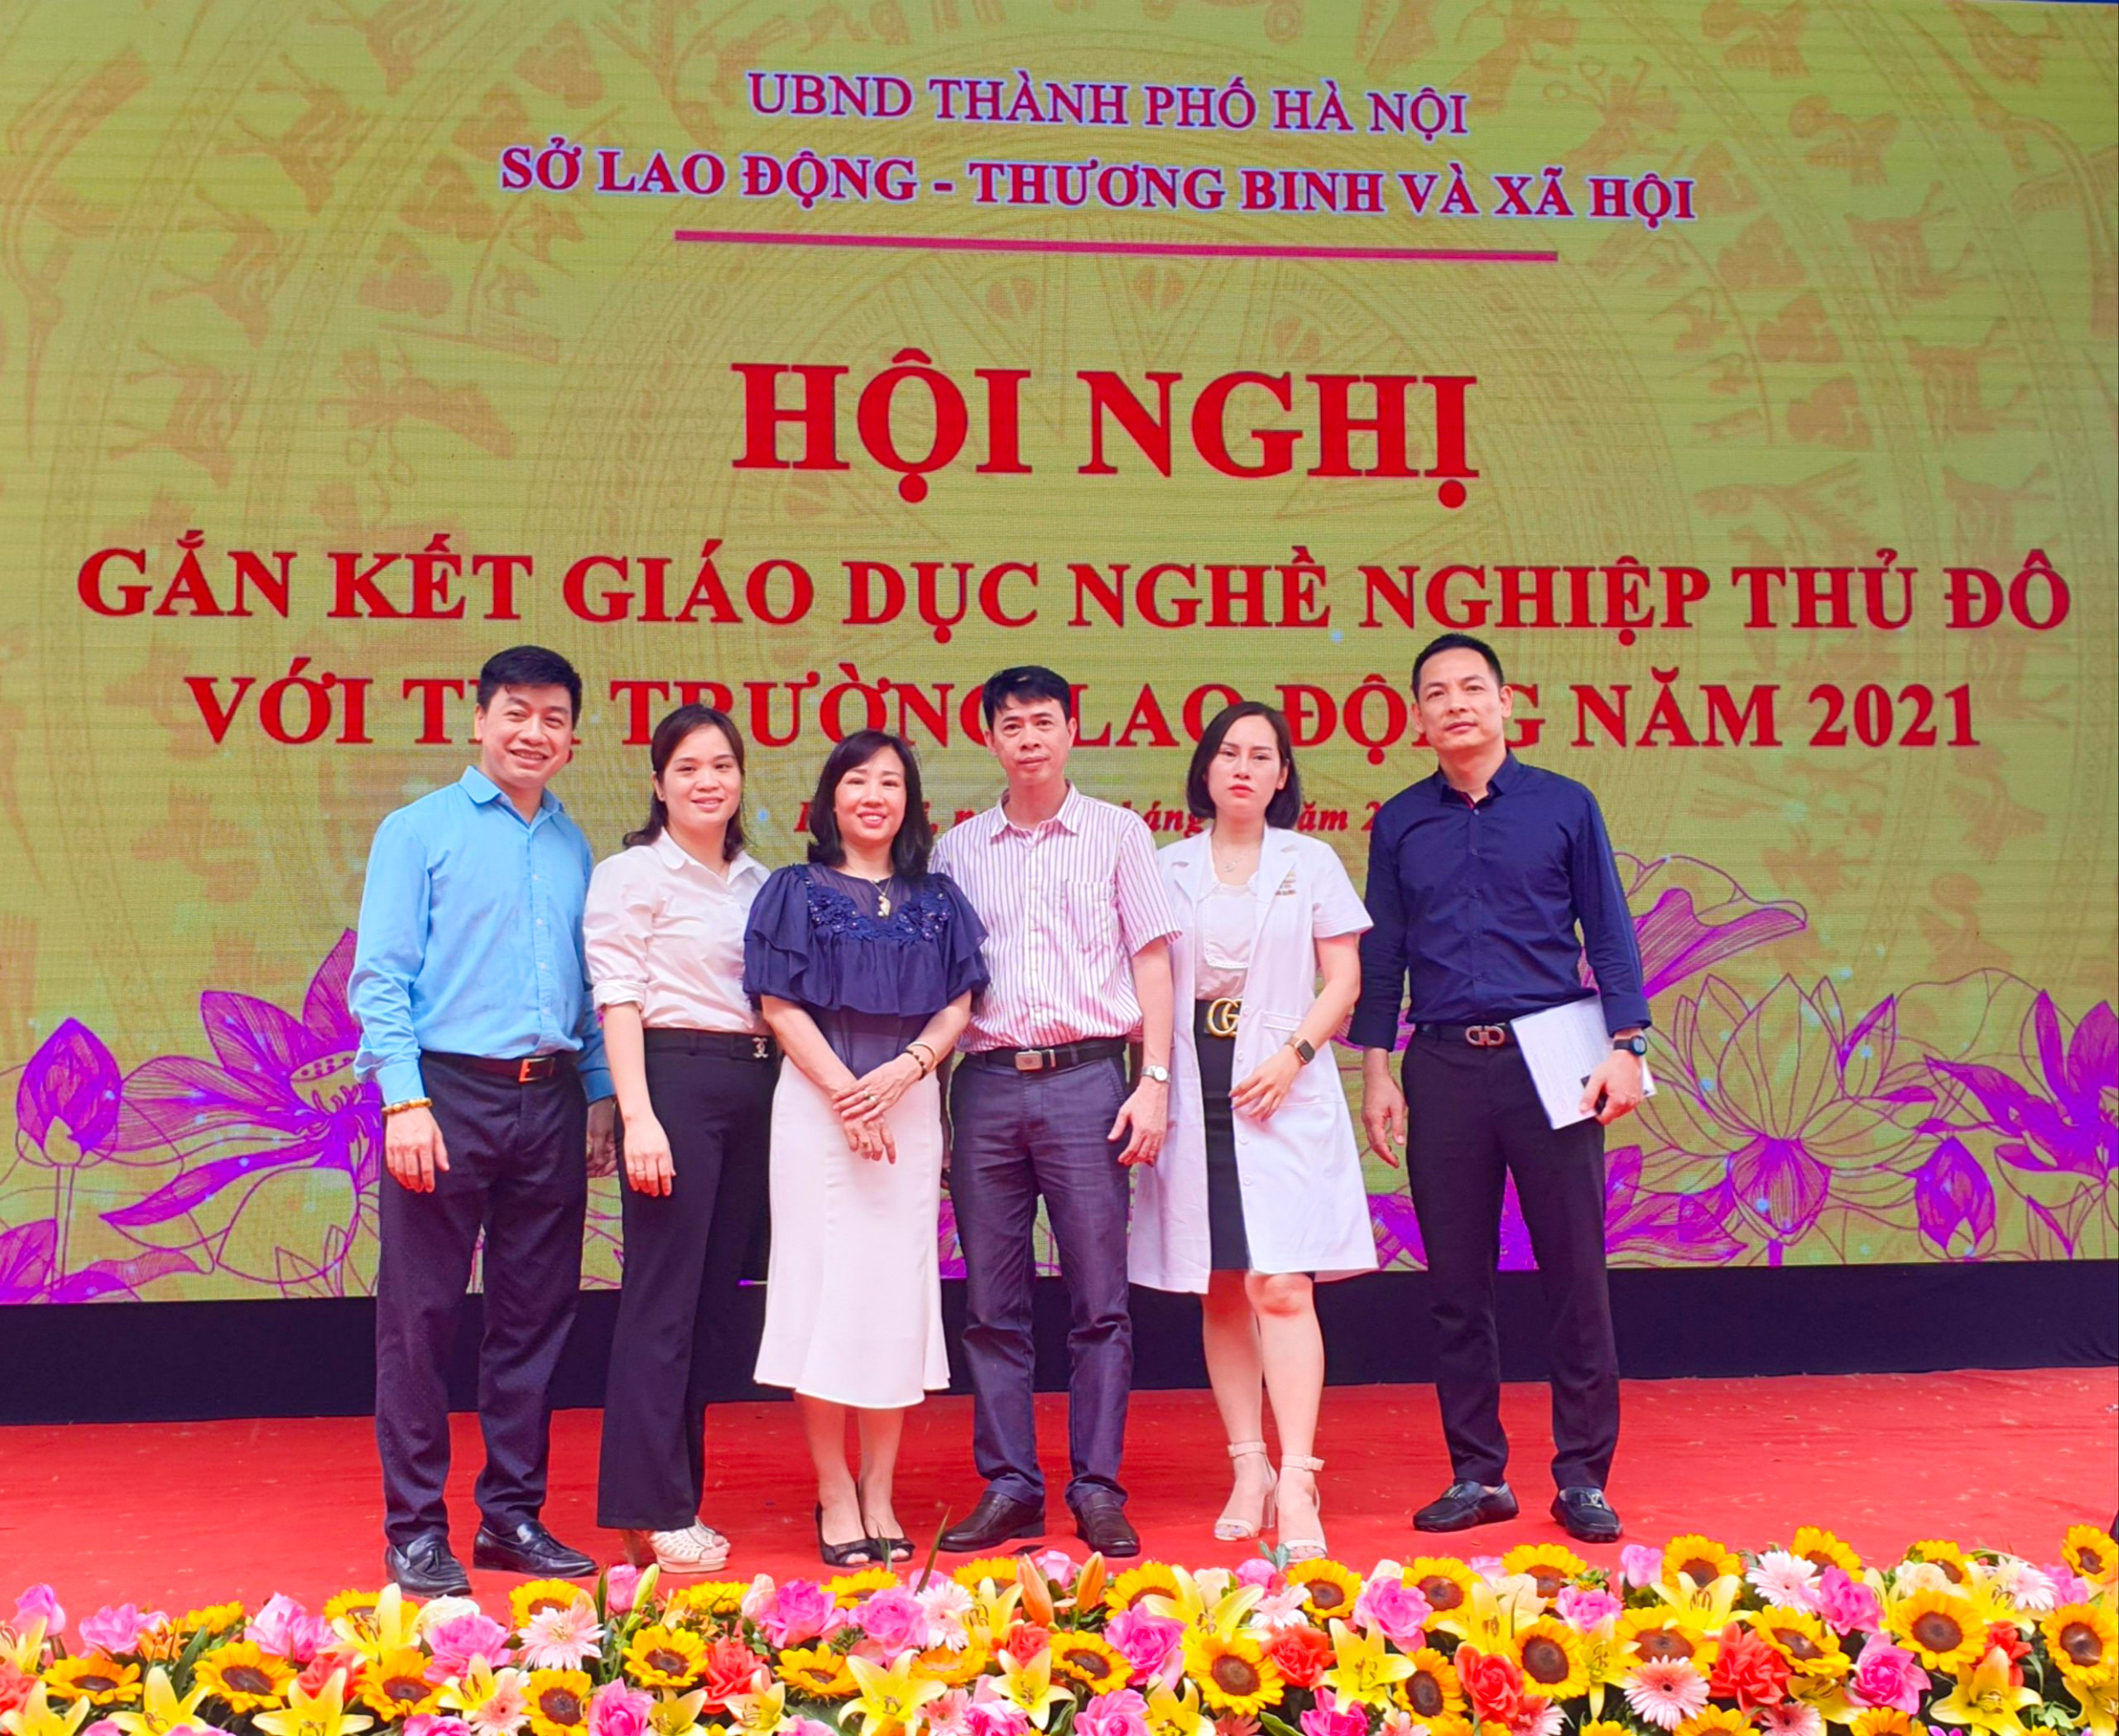 Hà Nội: Gắn kết giáo dục nghề nghiệp với thị trường lao động